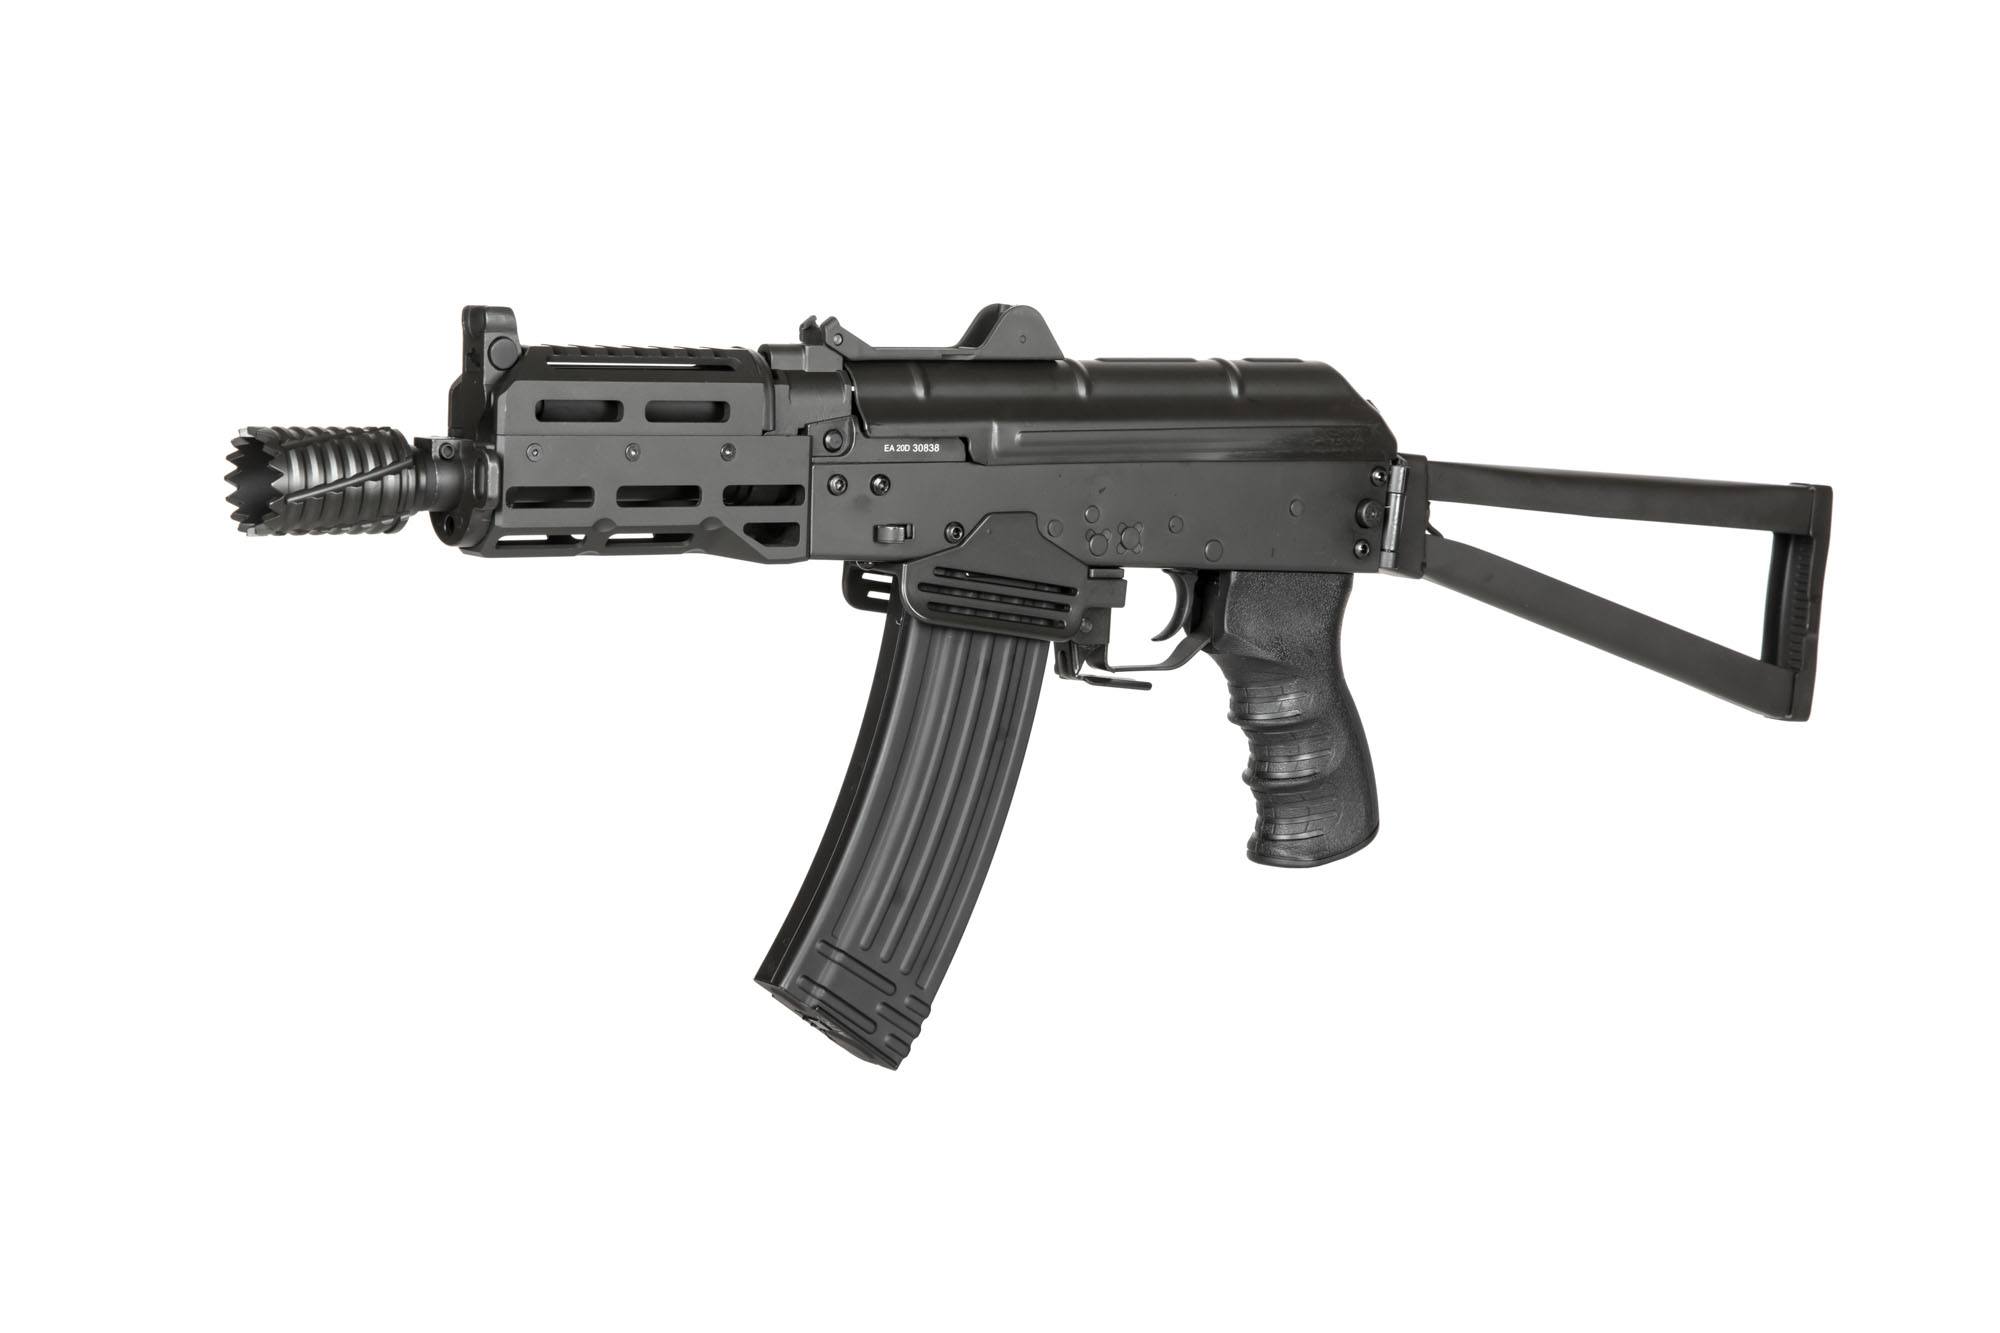 ASK211 EBB assault rifle